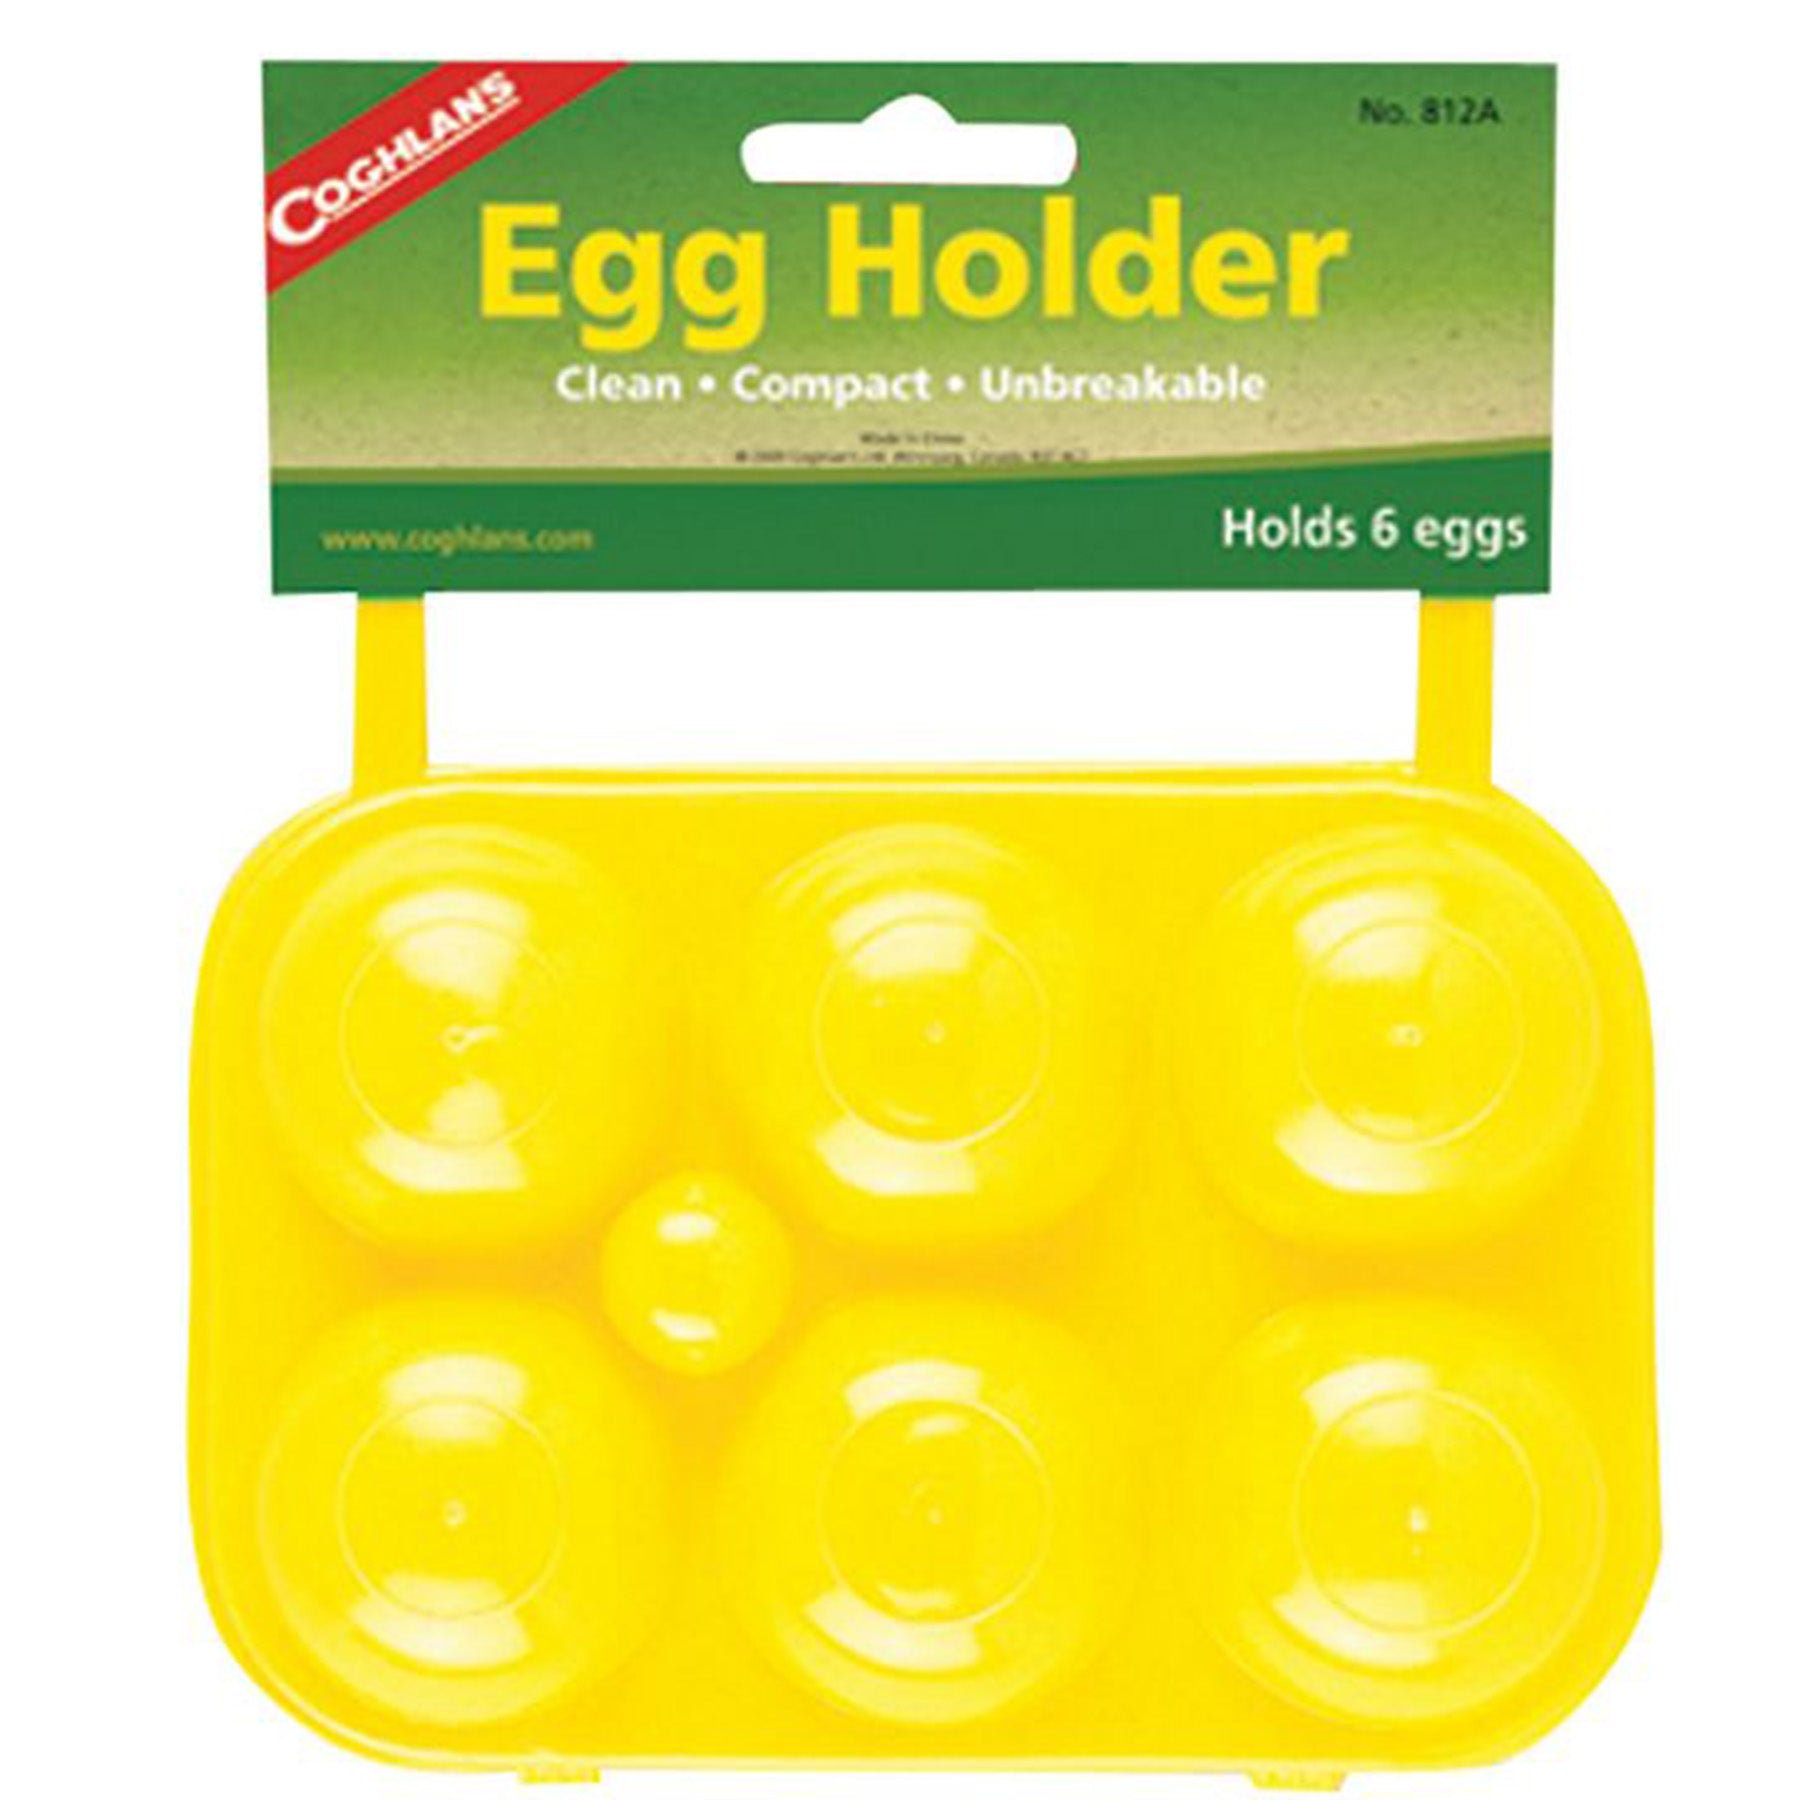 6-egg carrier, plastic